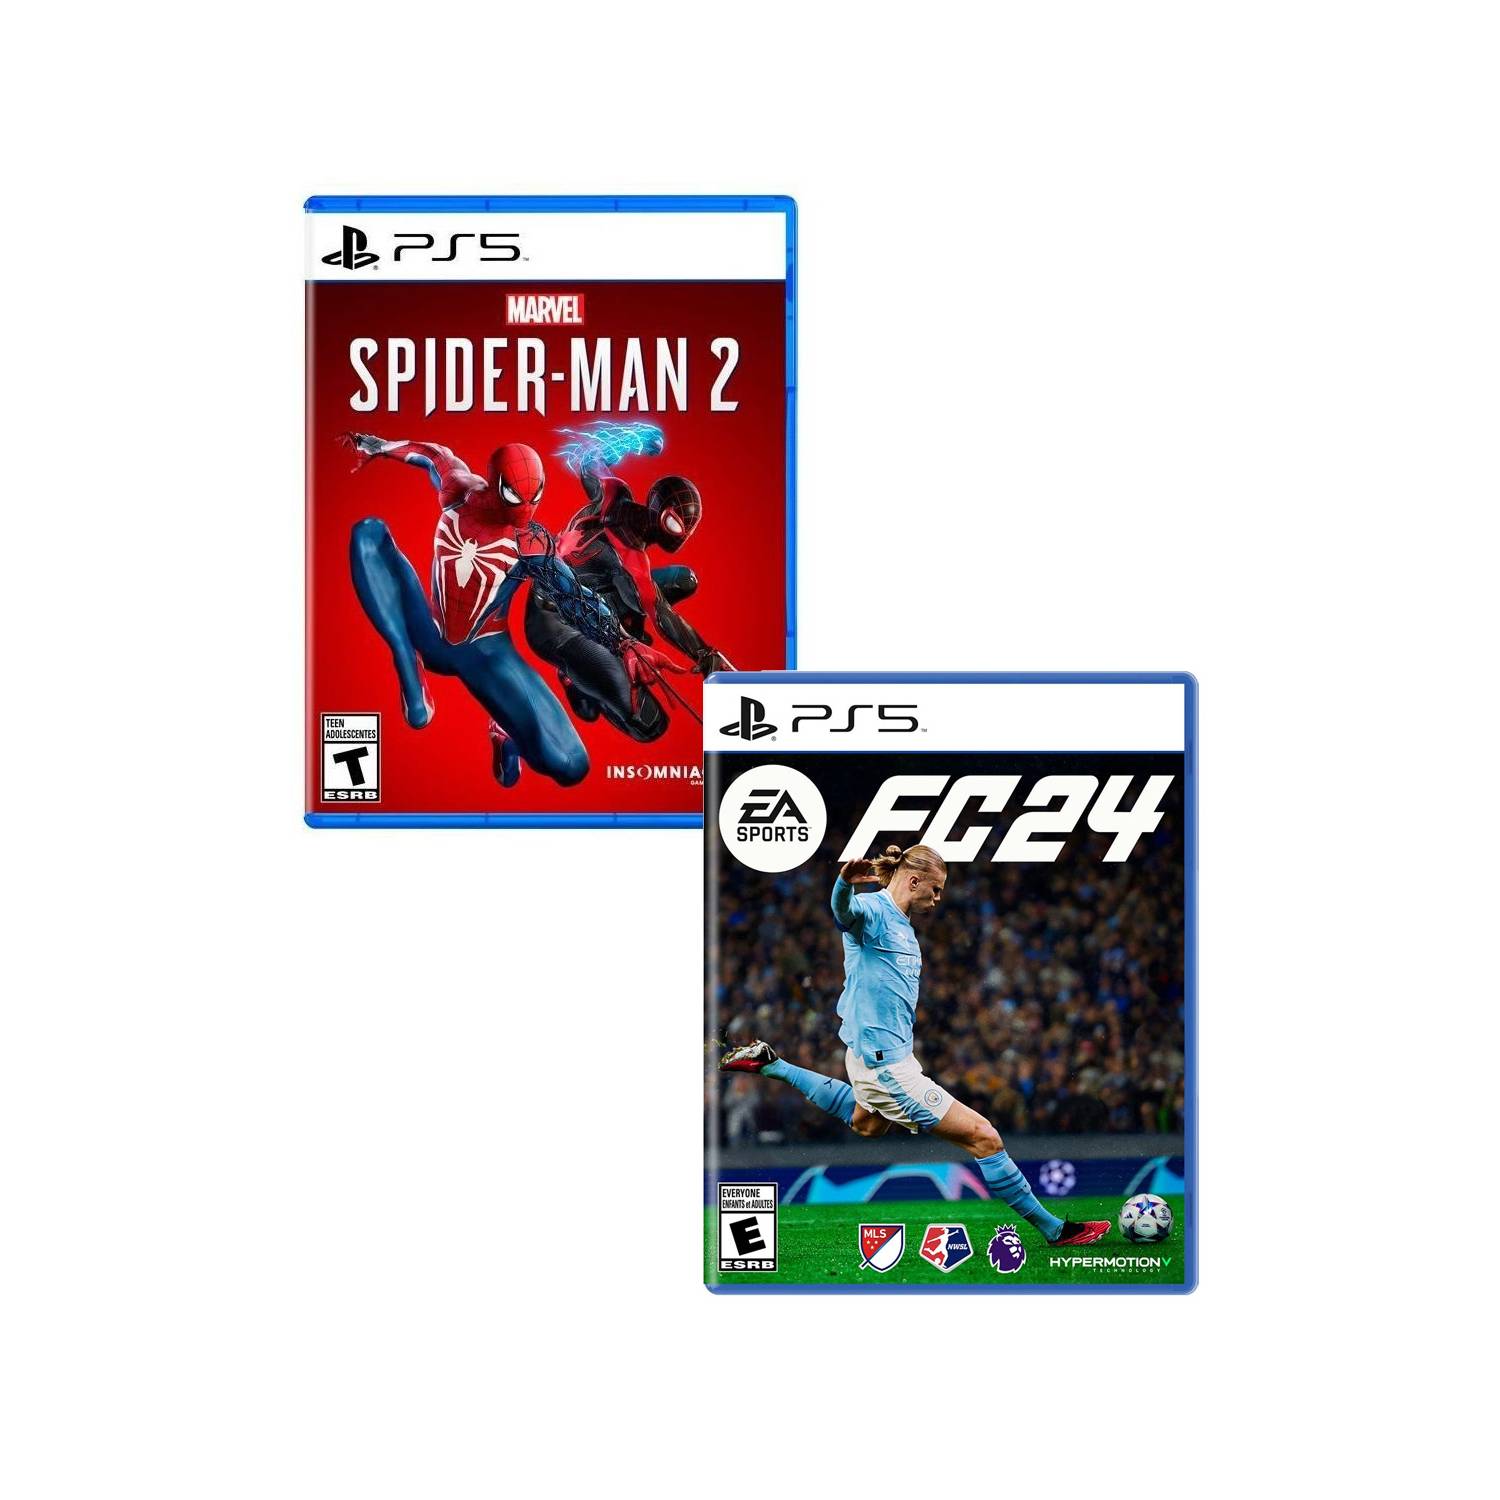 Spiderman 2 PlayStation 5 + EA Sports FC 24 PlayStation 5 SONY